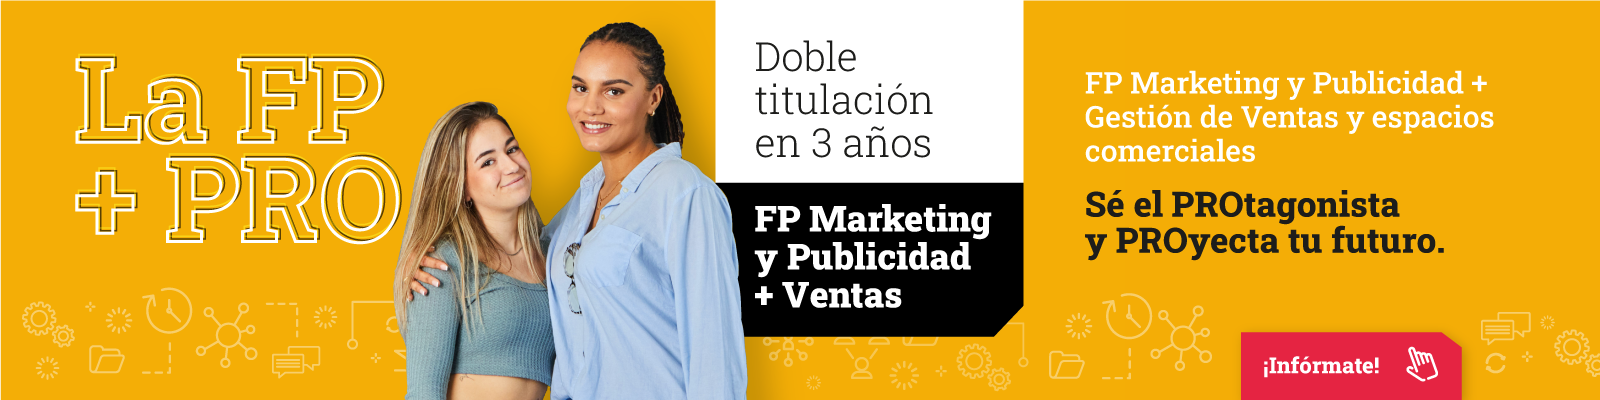 Doble titulación FP Marketing y Publicidad y Ventas